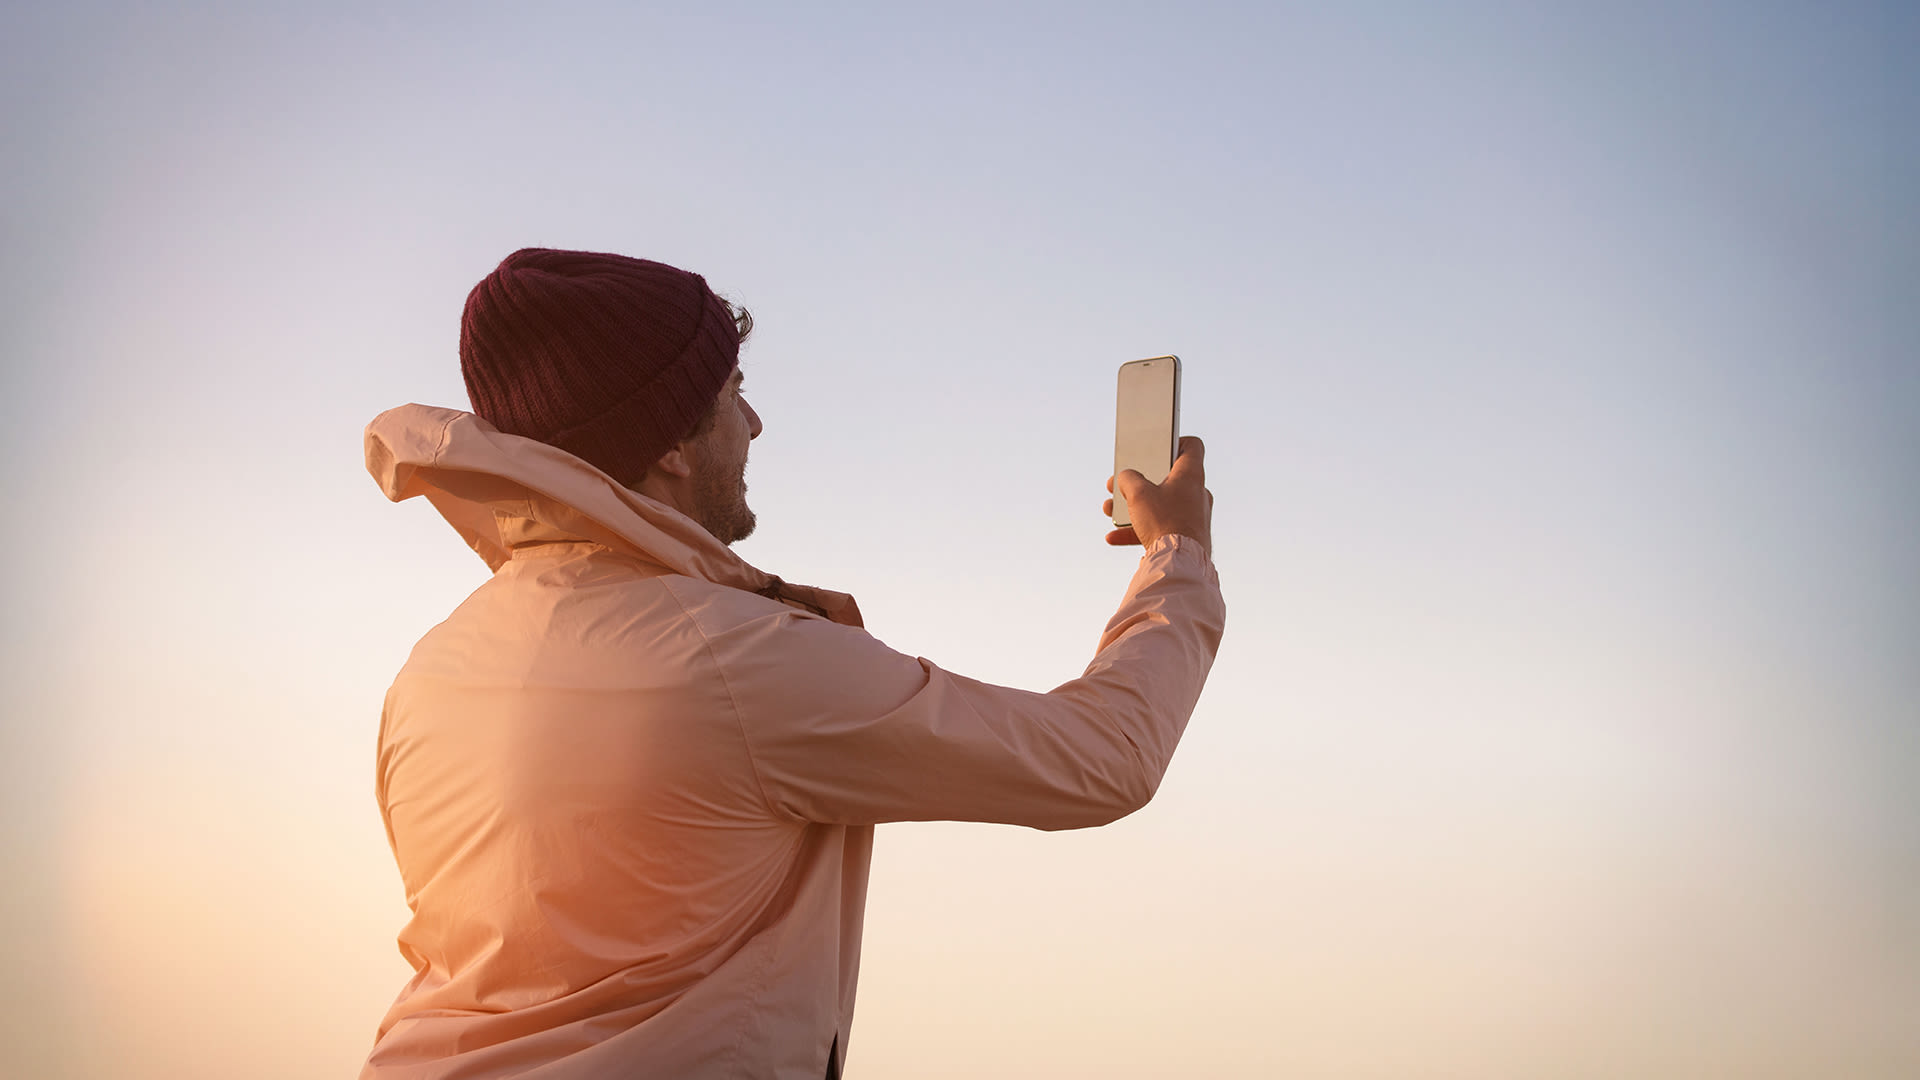 Man i svart mössa och vit vindjacka håller i en mobil. Det ser ut att vara soluppgång/solnedgång och som att han fotar den.